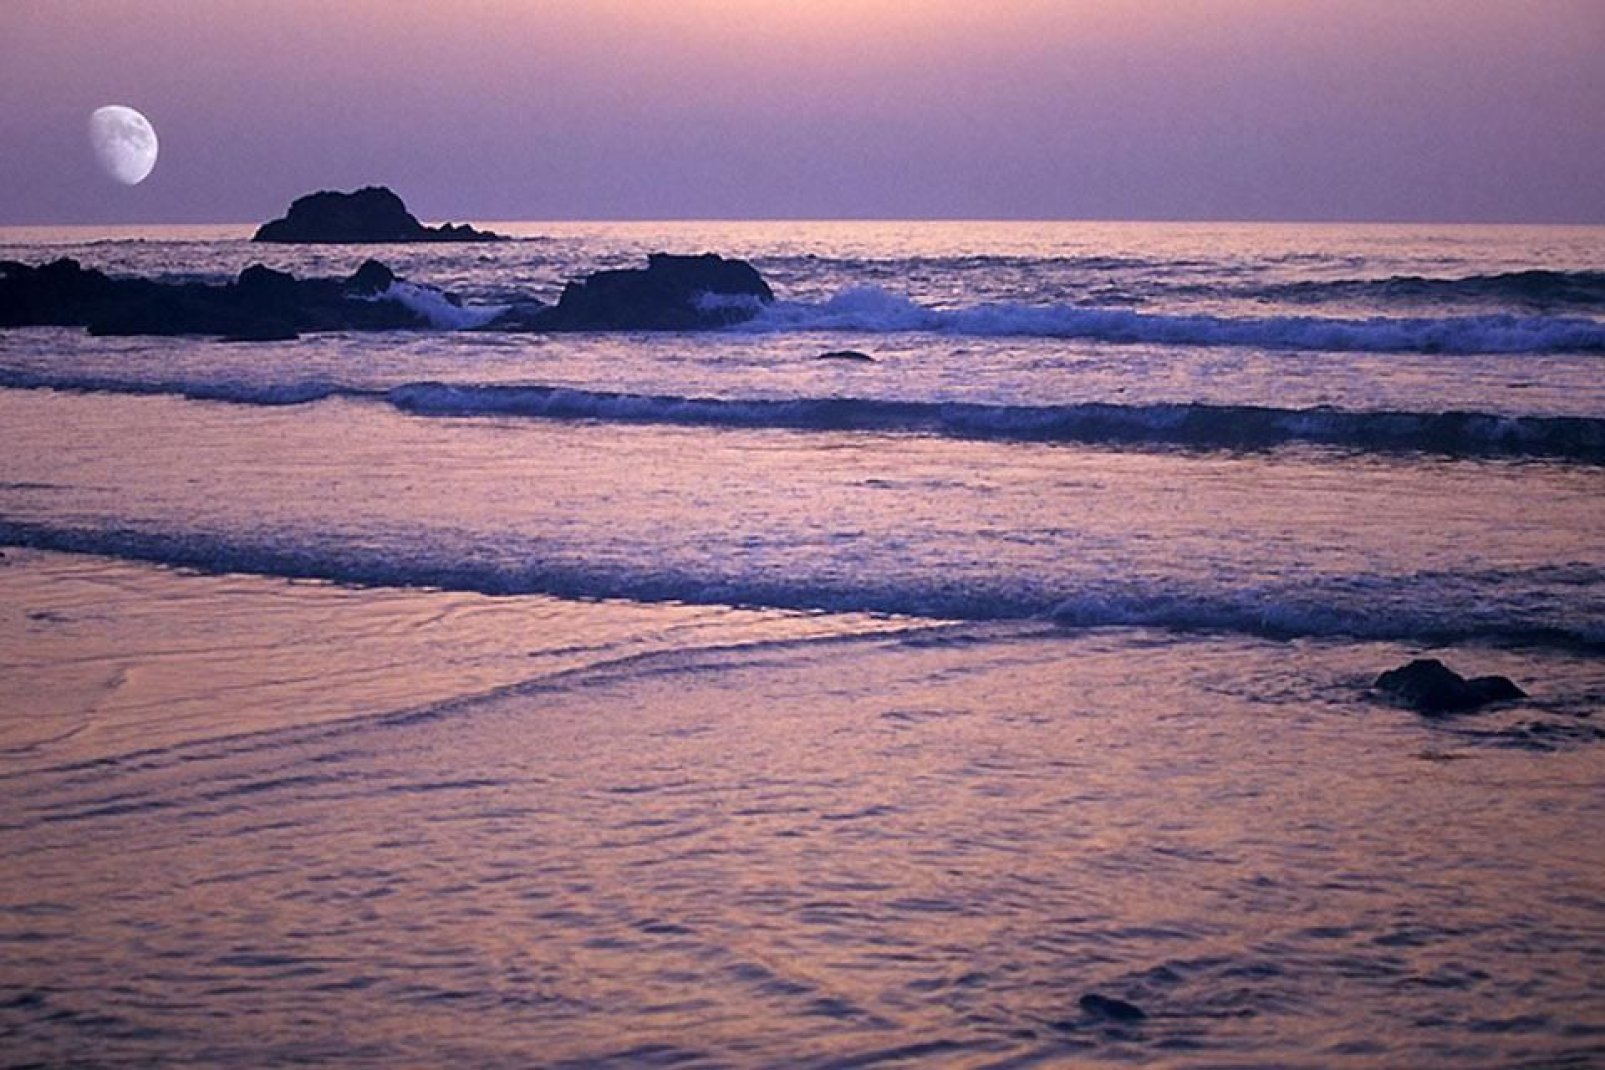 Le soir venu, admirez un magnifique coucher de soleil sur la longue plage d'Agadir